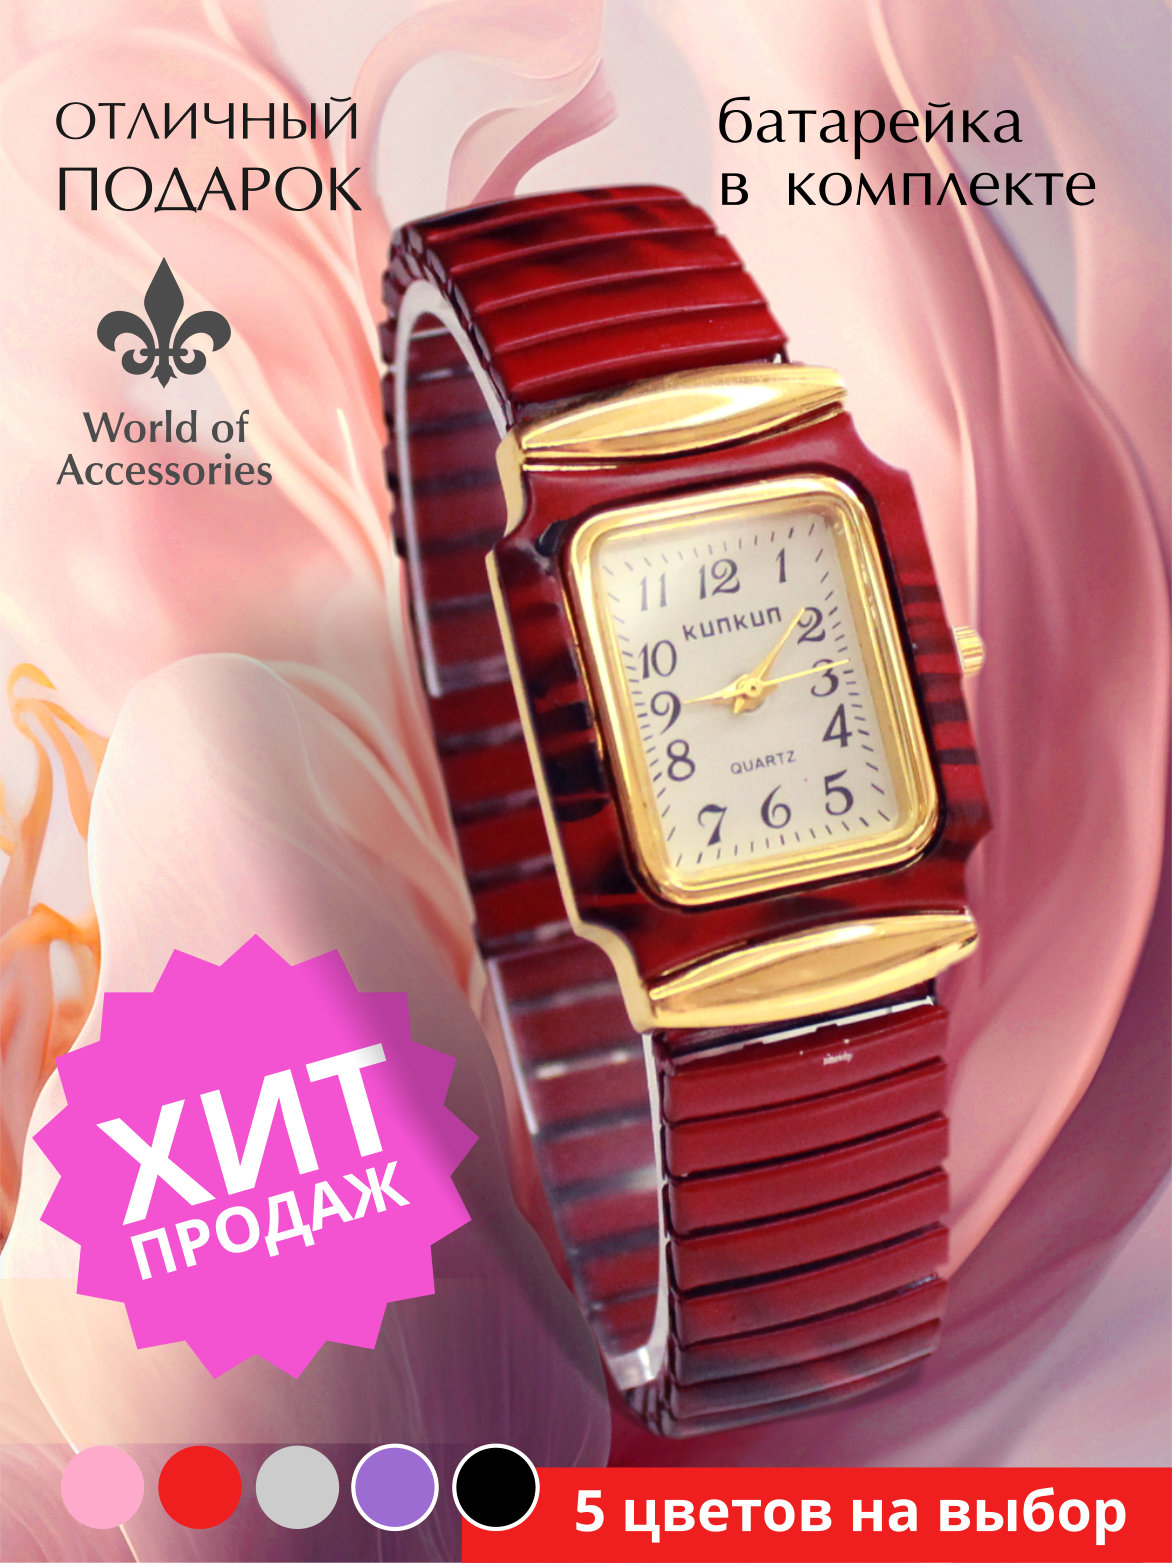 Наручные часы женские World of Accessories 5к красные